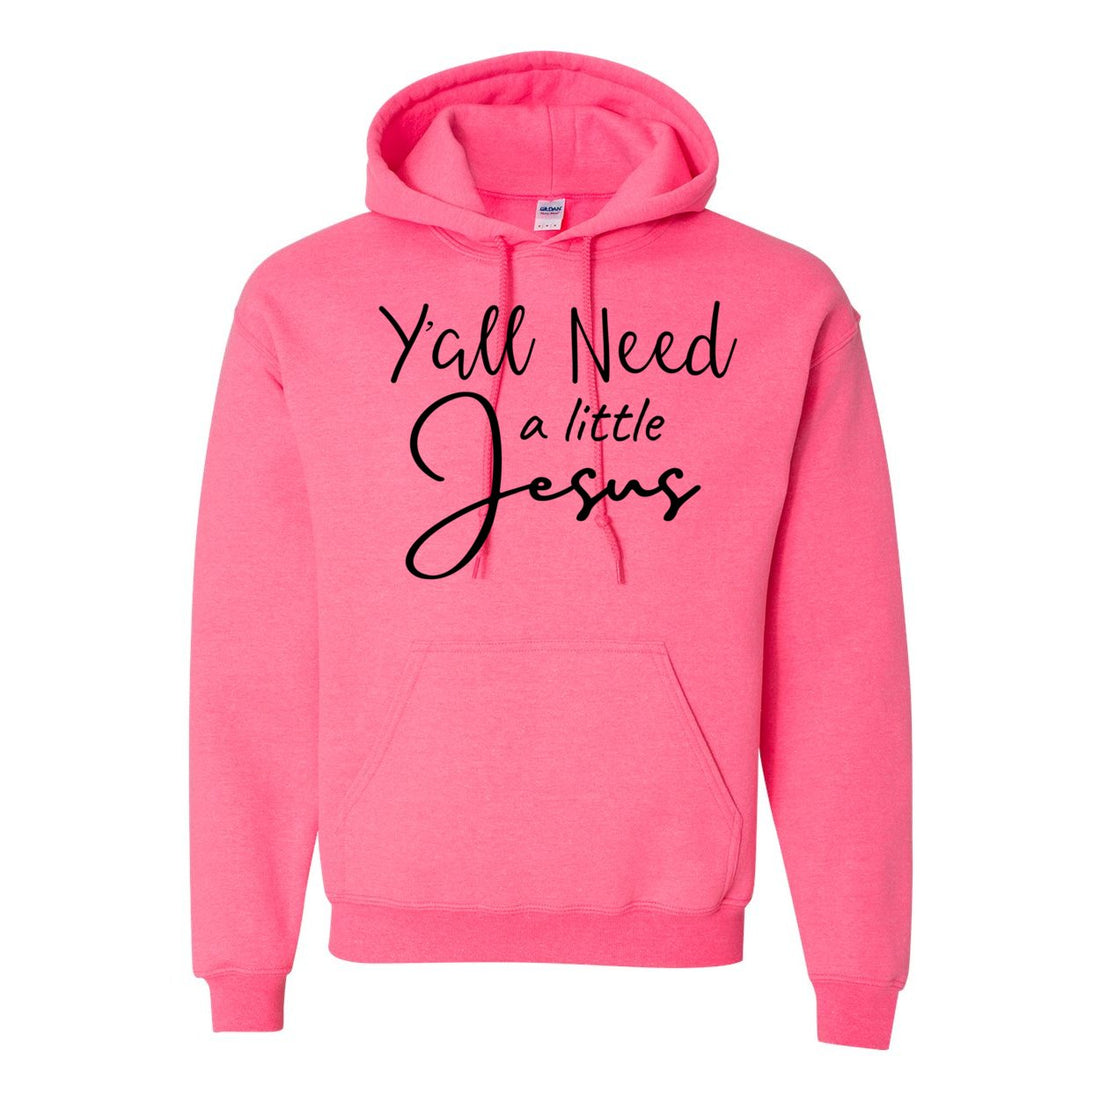 Y'all Need Jesus Hooded Sweatshirt - Sweaters/Hoodies - Positively Sassy - Y'all Need Jesus Hooded Sweatshirt